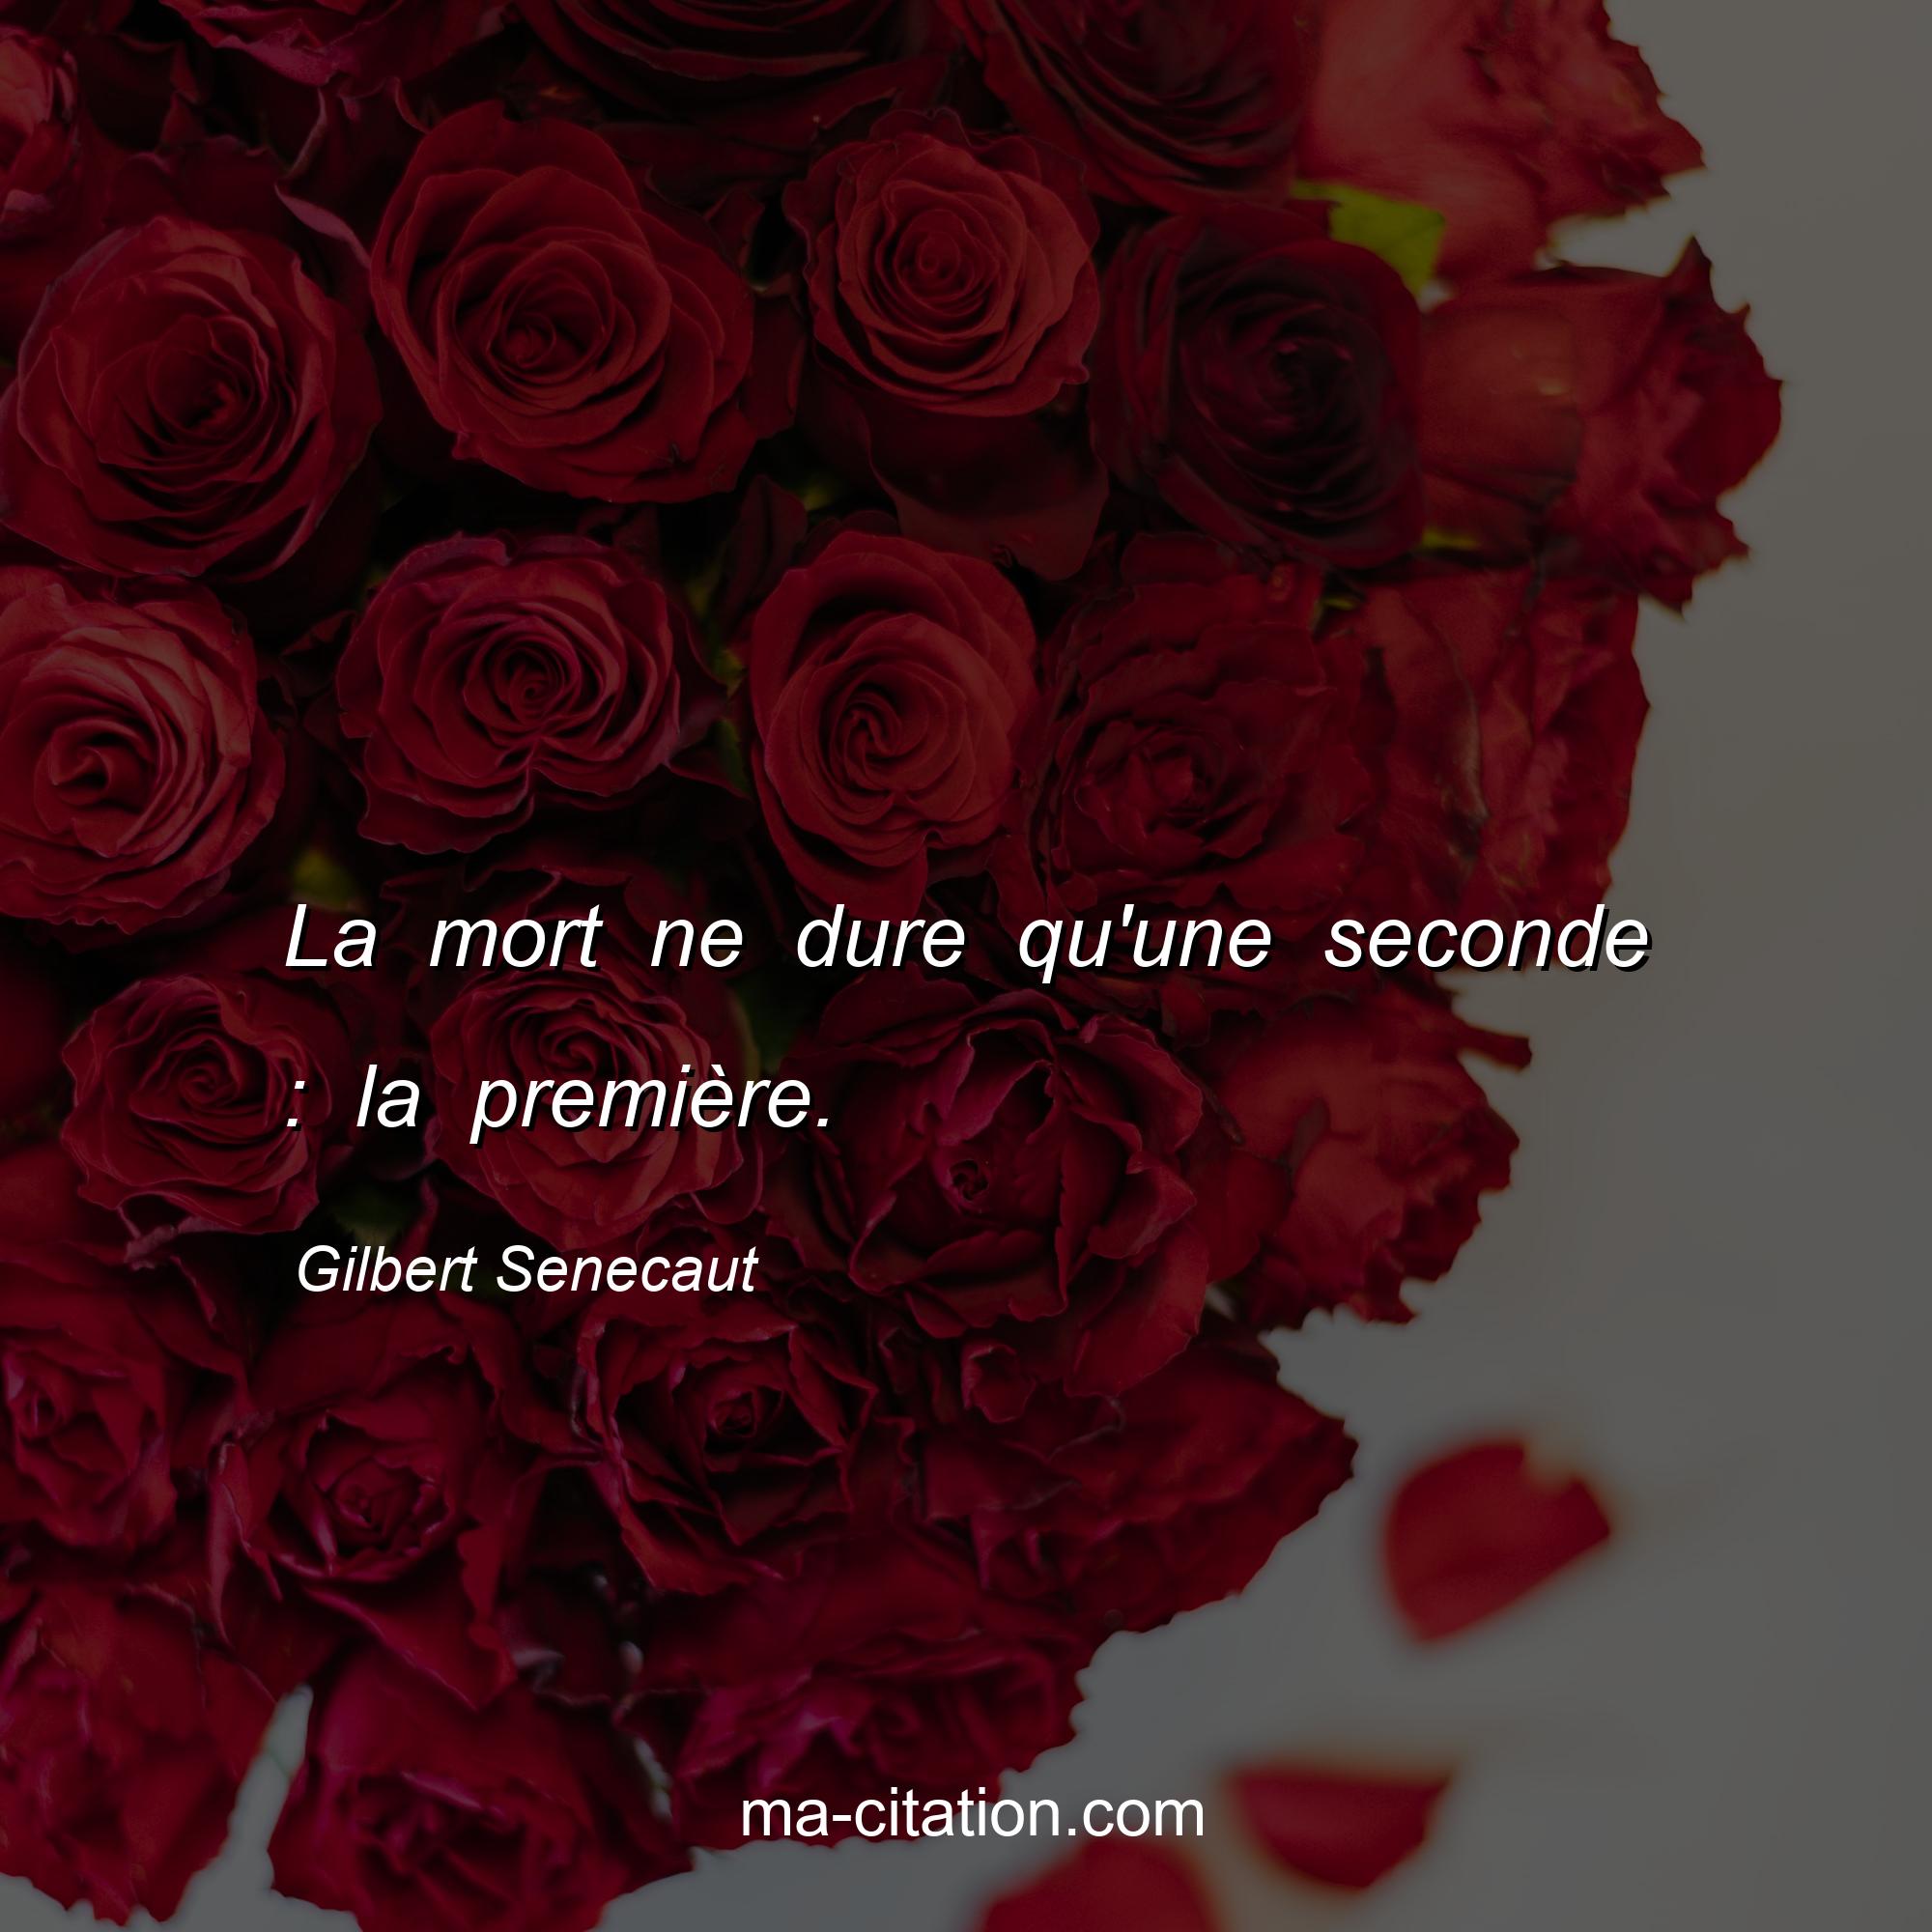 Gilbert Senecaut : La mort ne dure qu'une seconde : la première.